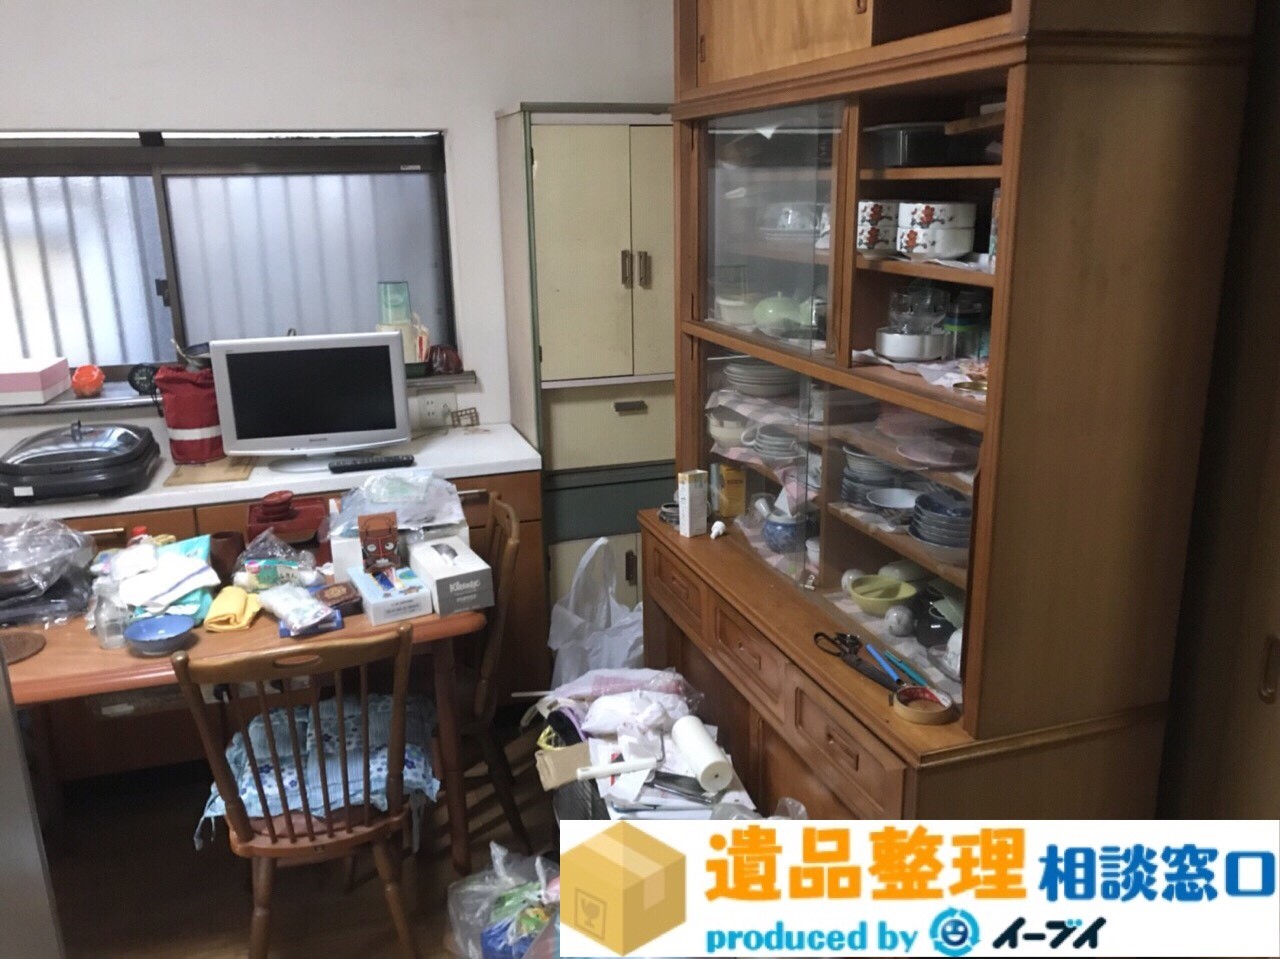 兵庫県姫路市で遺品整理に伴いキッチン用品や食器の片付け処分をしました。のアイキャッチ